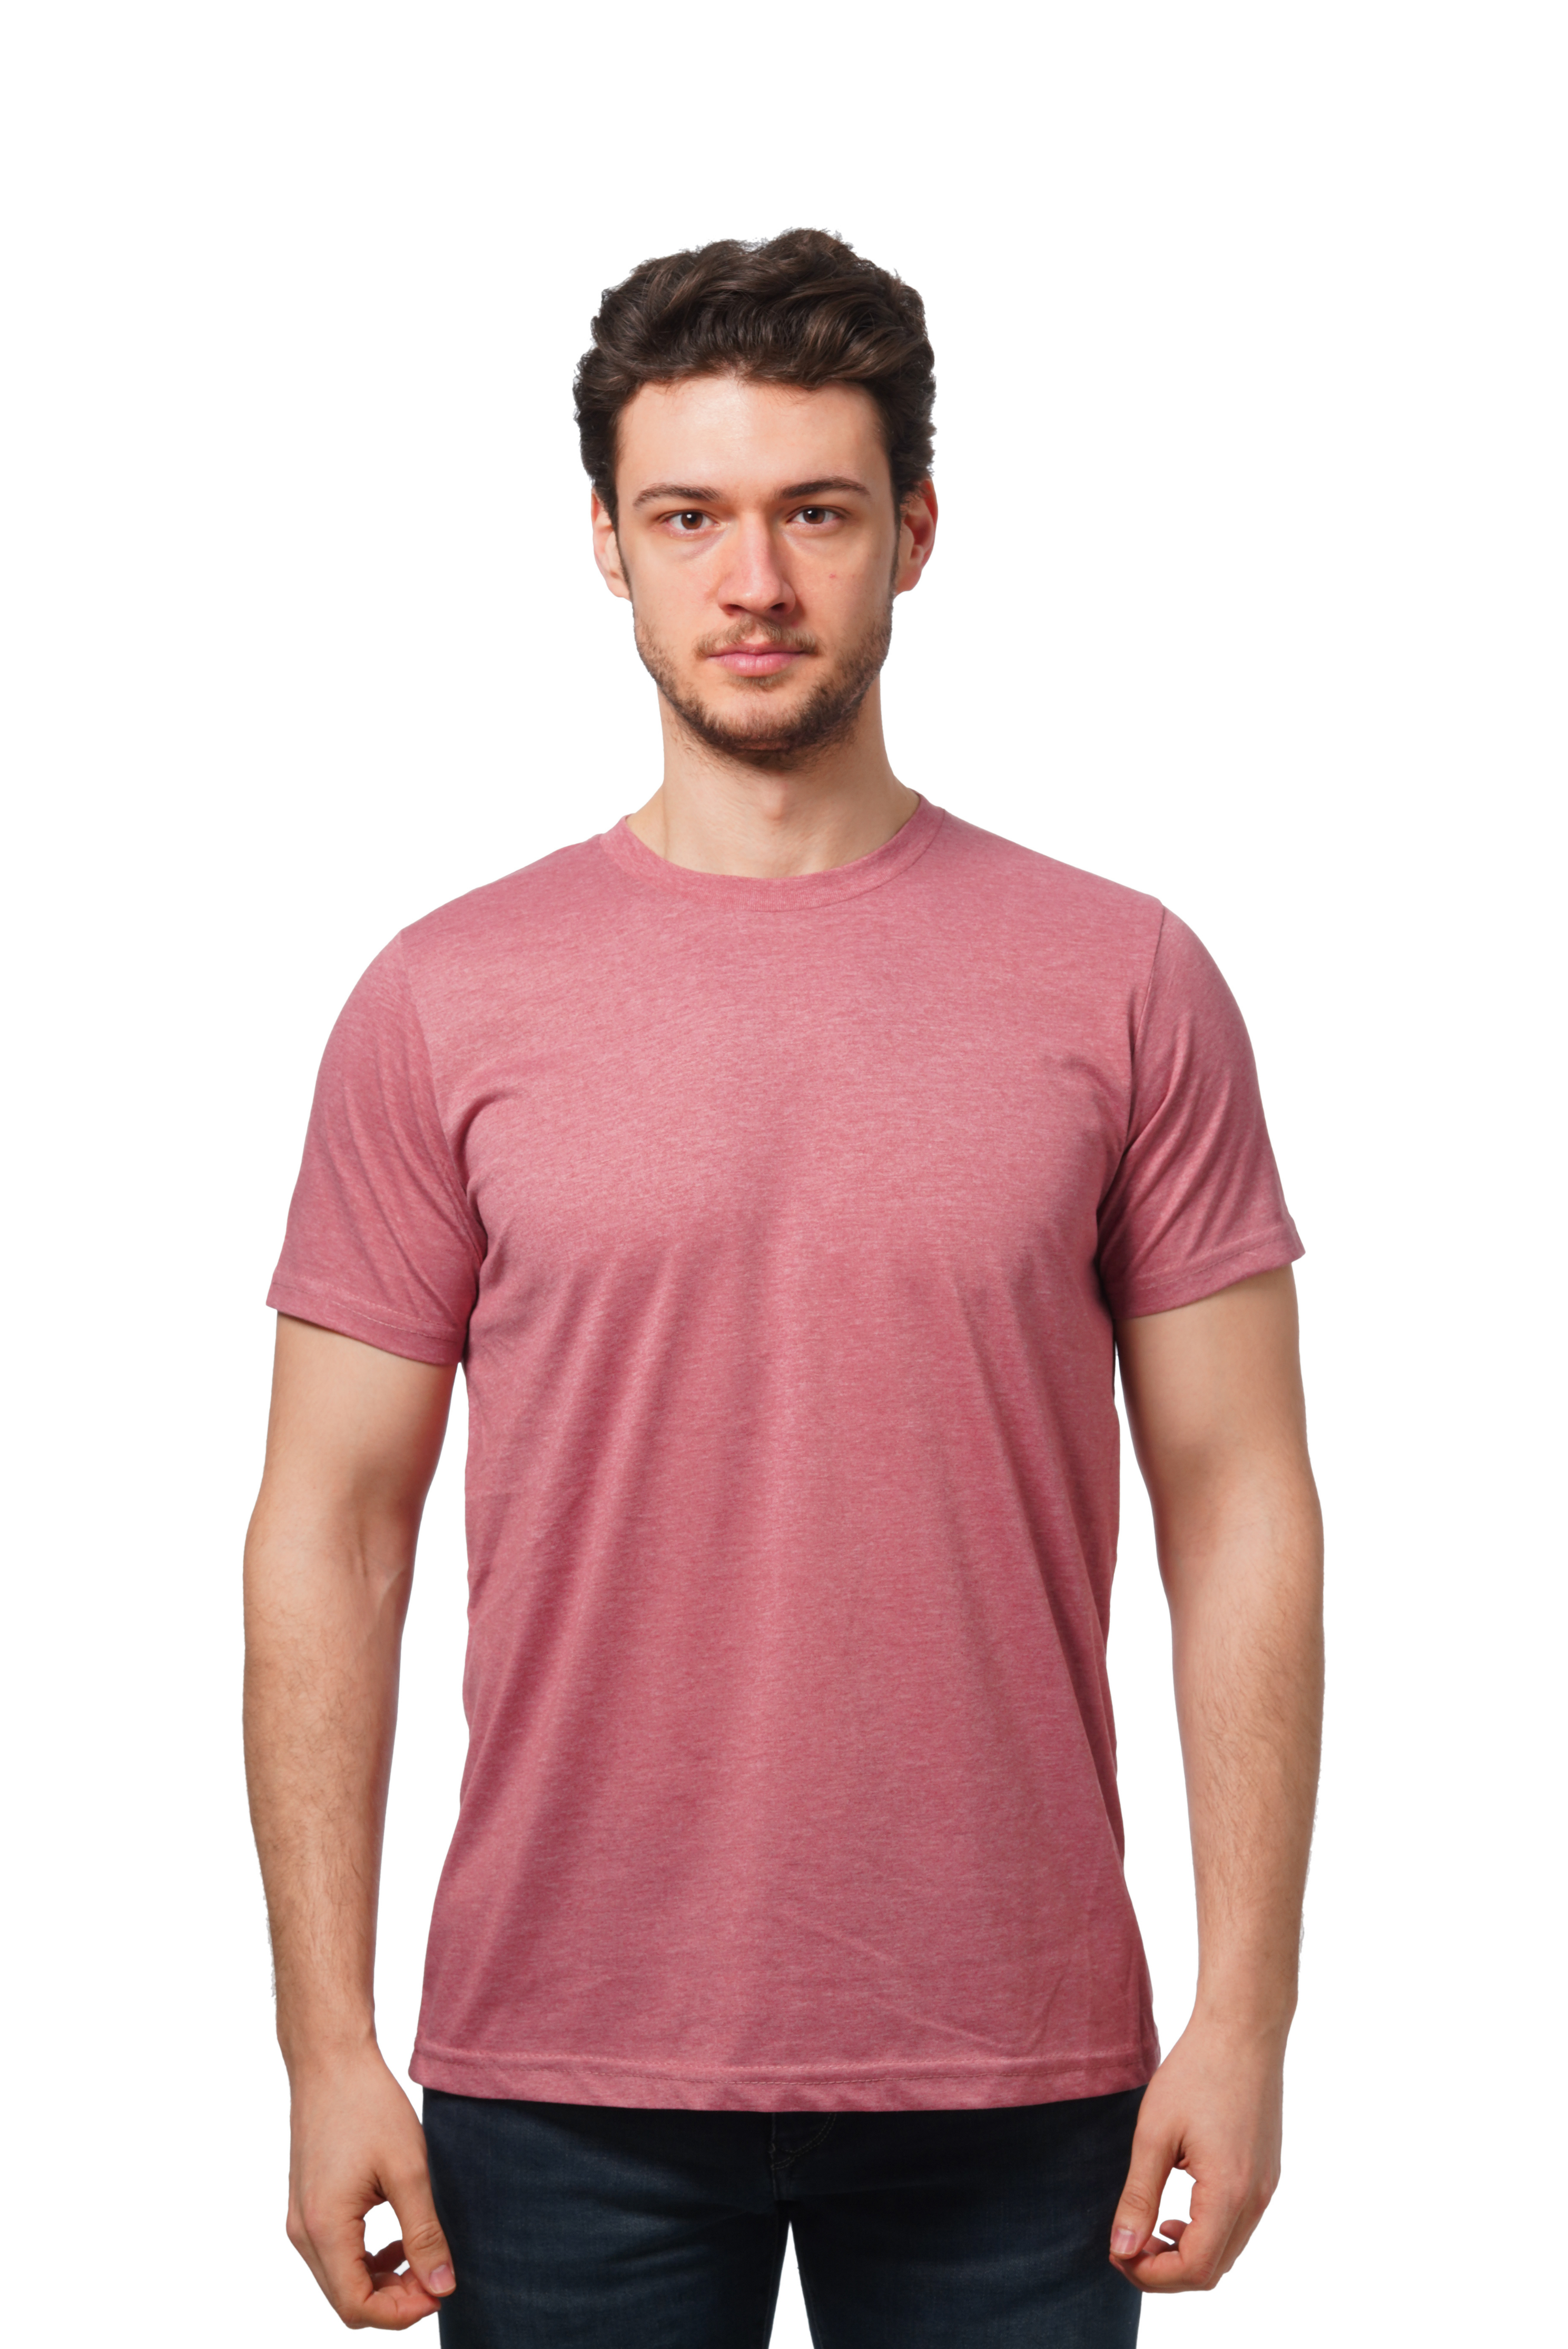 Outlash Wear 2001 Sleeve T-Shirt Unisex / Short S-XL